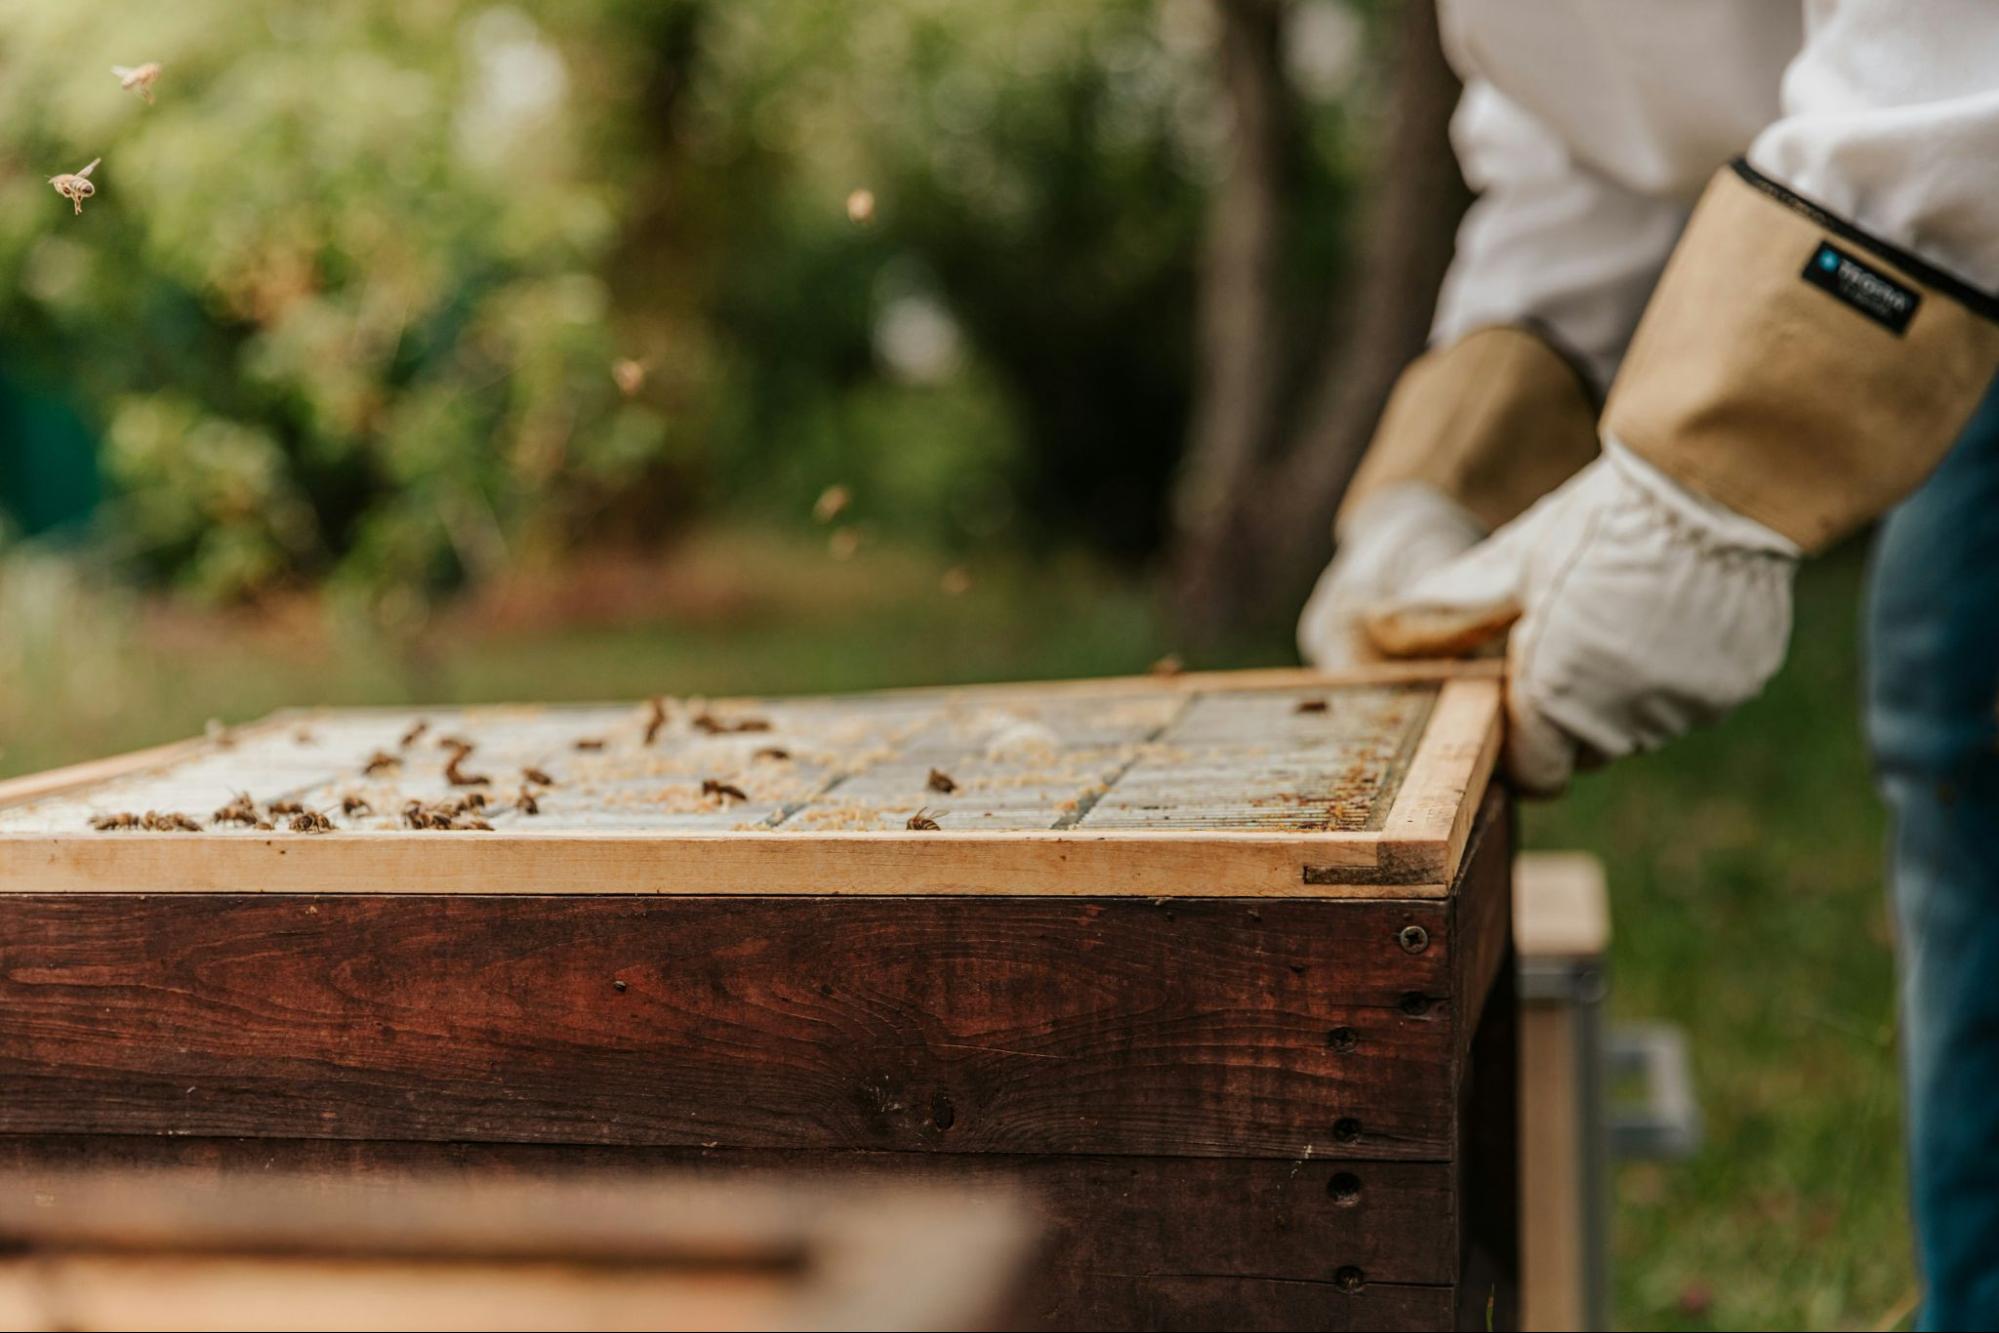 beekeeper inspecting honeybee hive